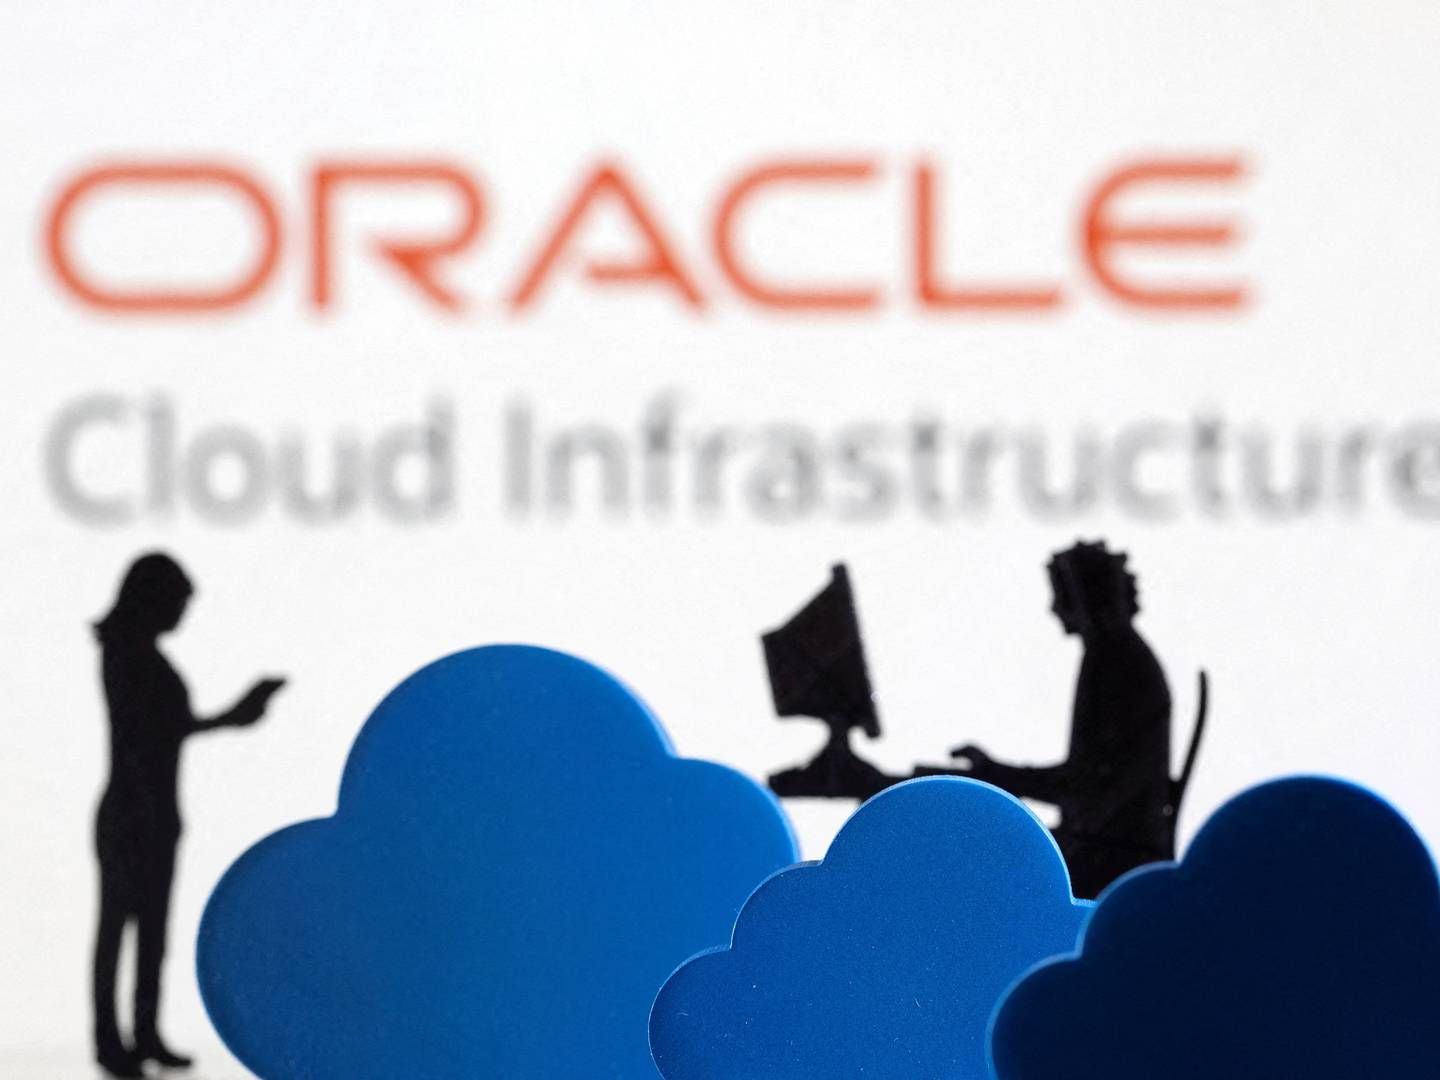 Oracles cloud-forretninger ligger nu næsten på årlige indtægter på 20 mia. dollar. | Foto: Dado Ruvic/Reuters/Ritzau Scanpix